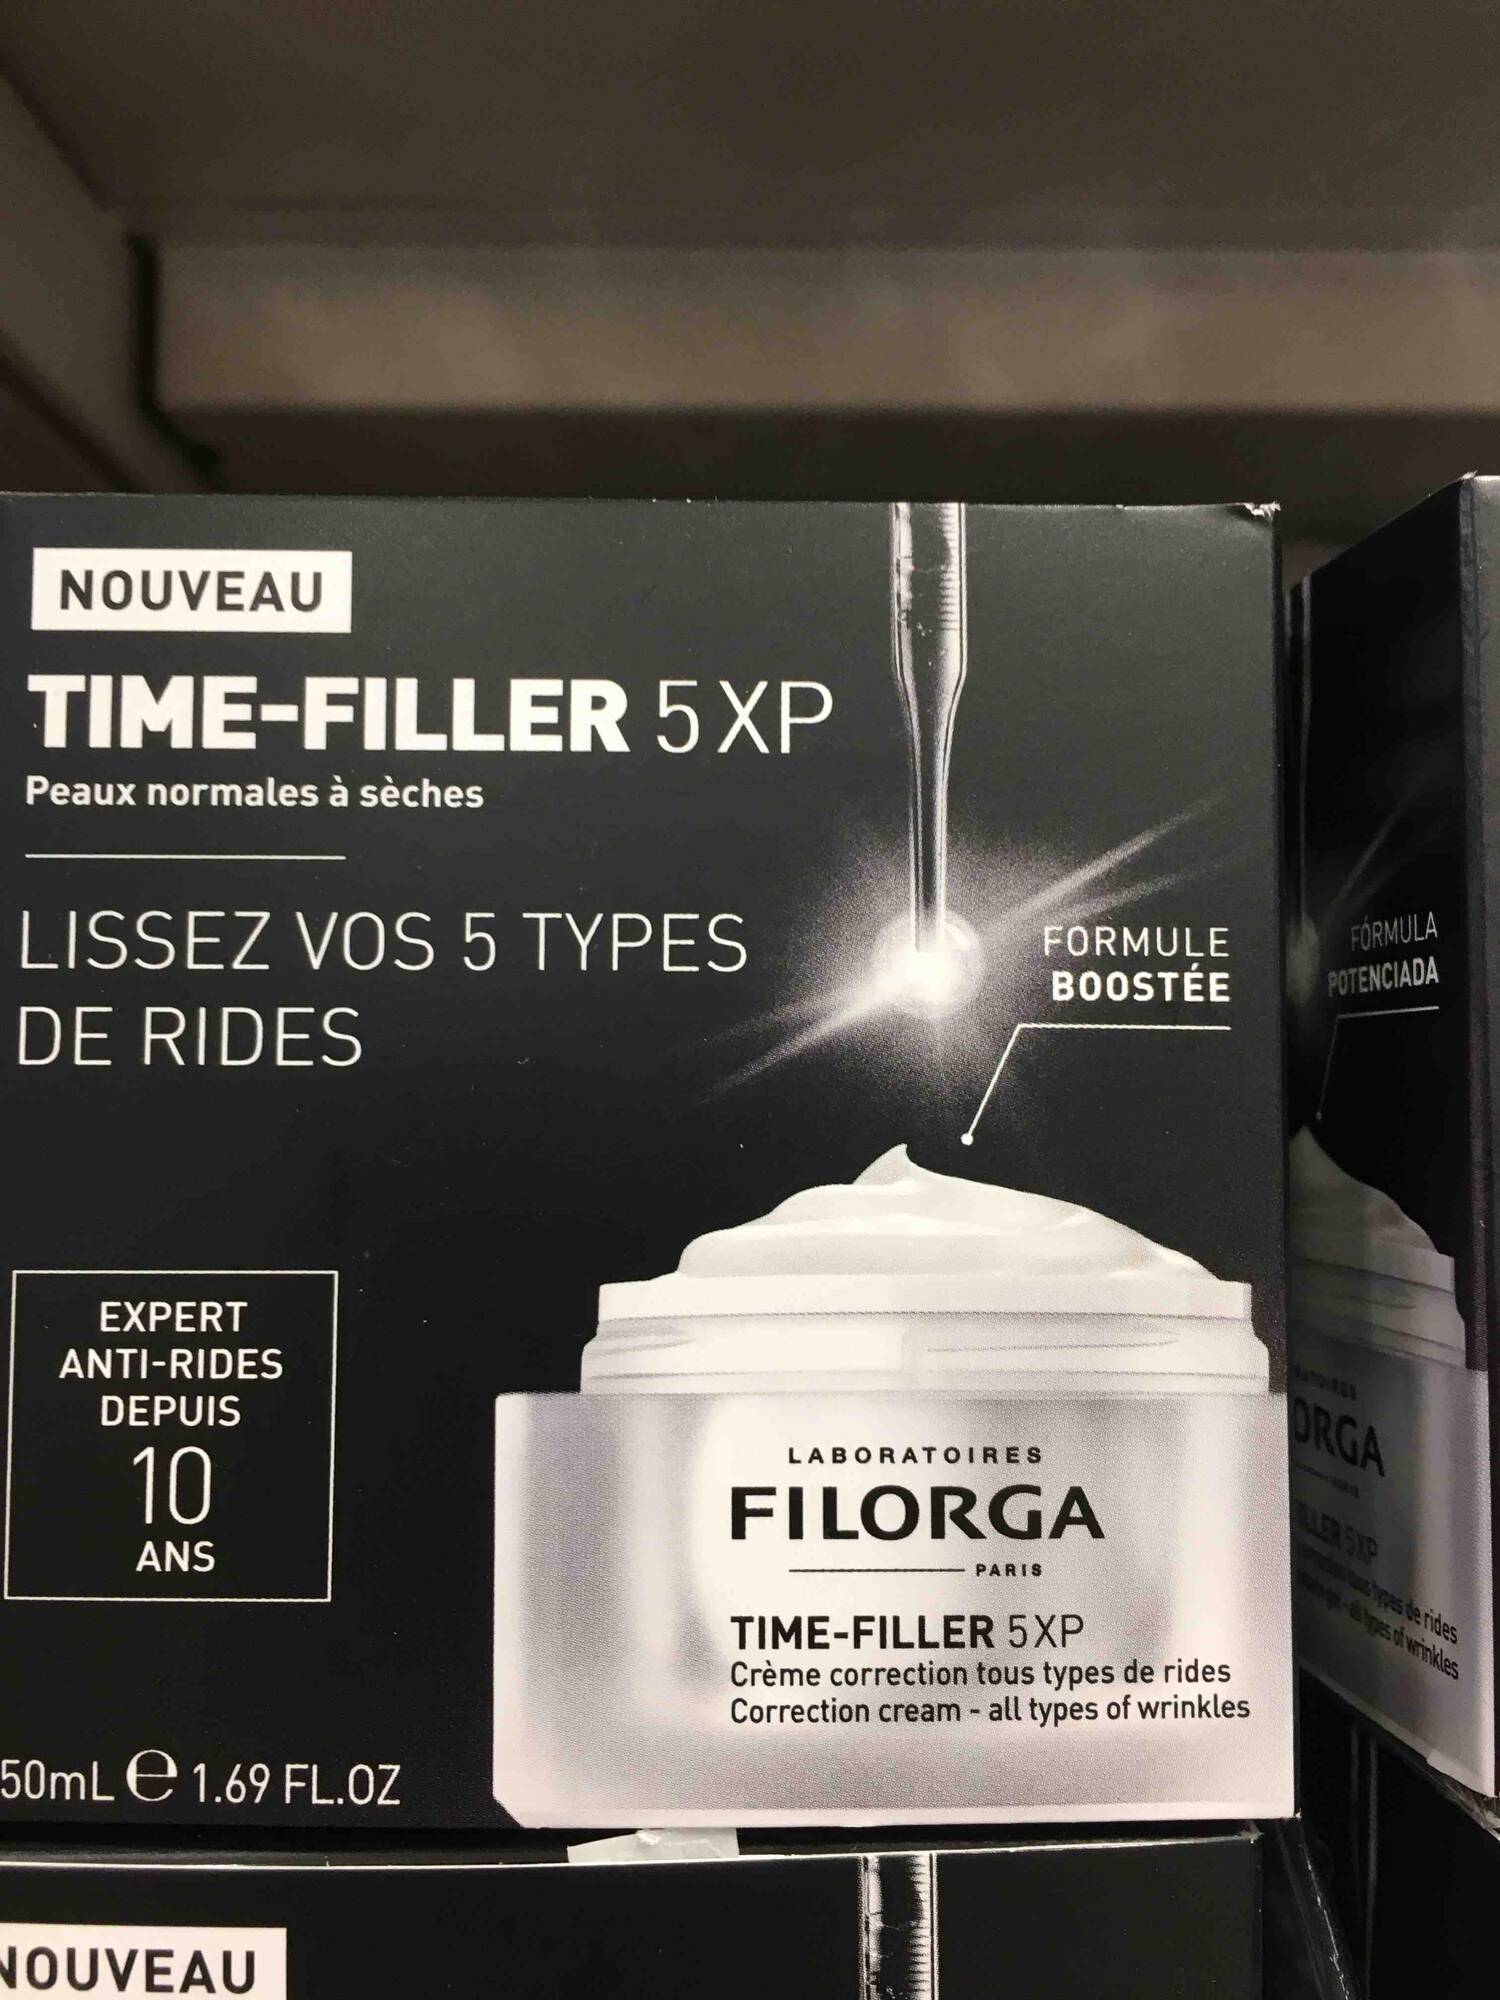 FILORGA - Time-filler 5 XP - Crème correction tous types de rides